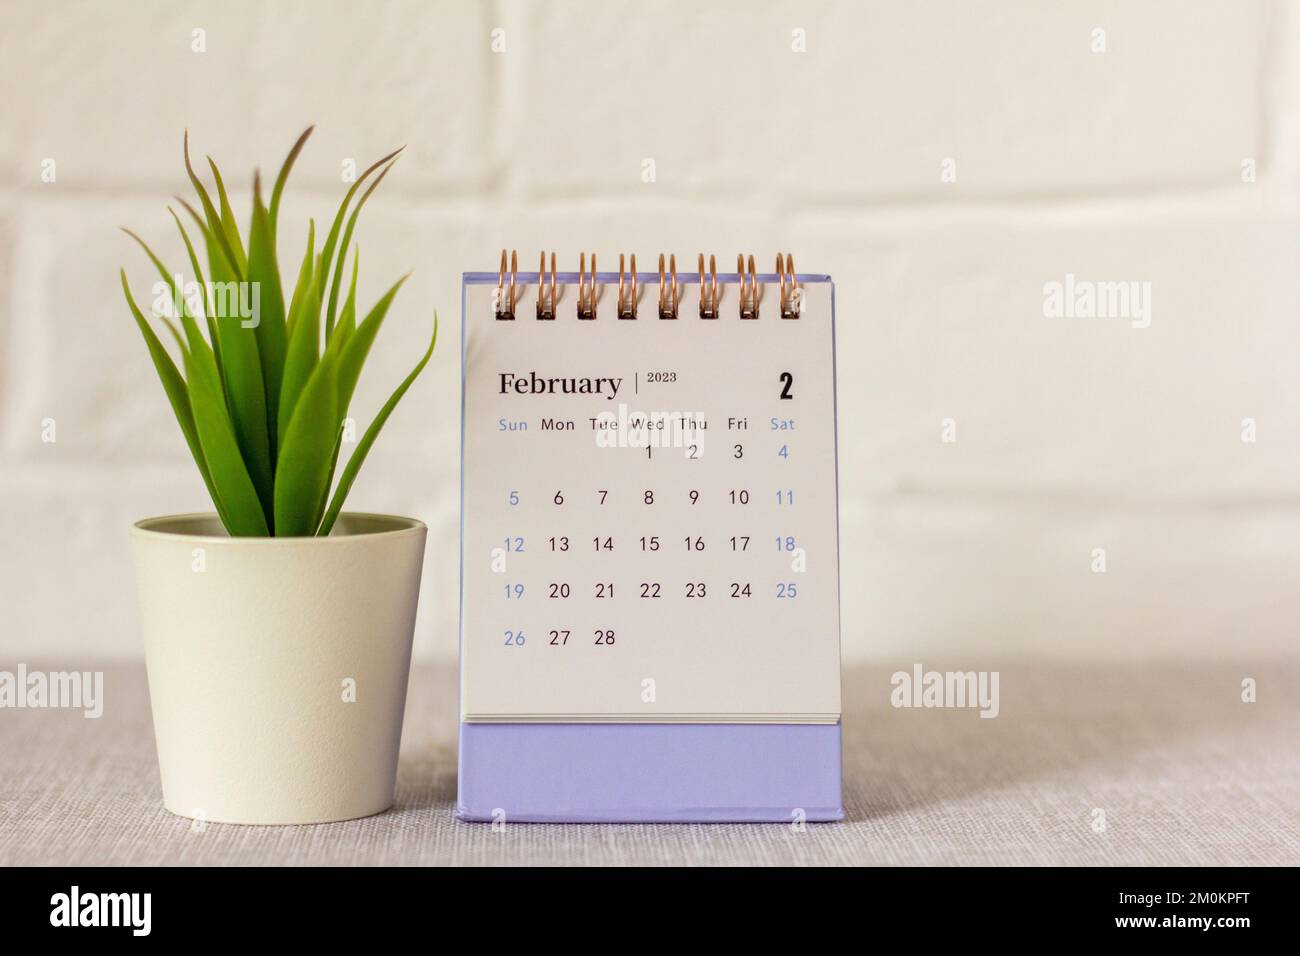 Hãy cùng khám phá lịch desktop cho tháng 2 năm 2024 đầy tràn năng lượng và sắc màu! Với thiết kế độc đáo, mỗi ngày của bạn sẽ được đón nhận và khởi đầu một cách tươi mới. Hãy bấm vào ảnh để tải xuống lịch ngay hôm nay!